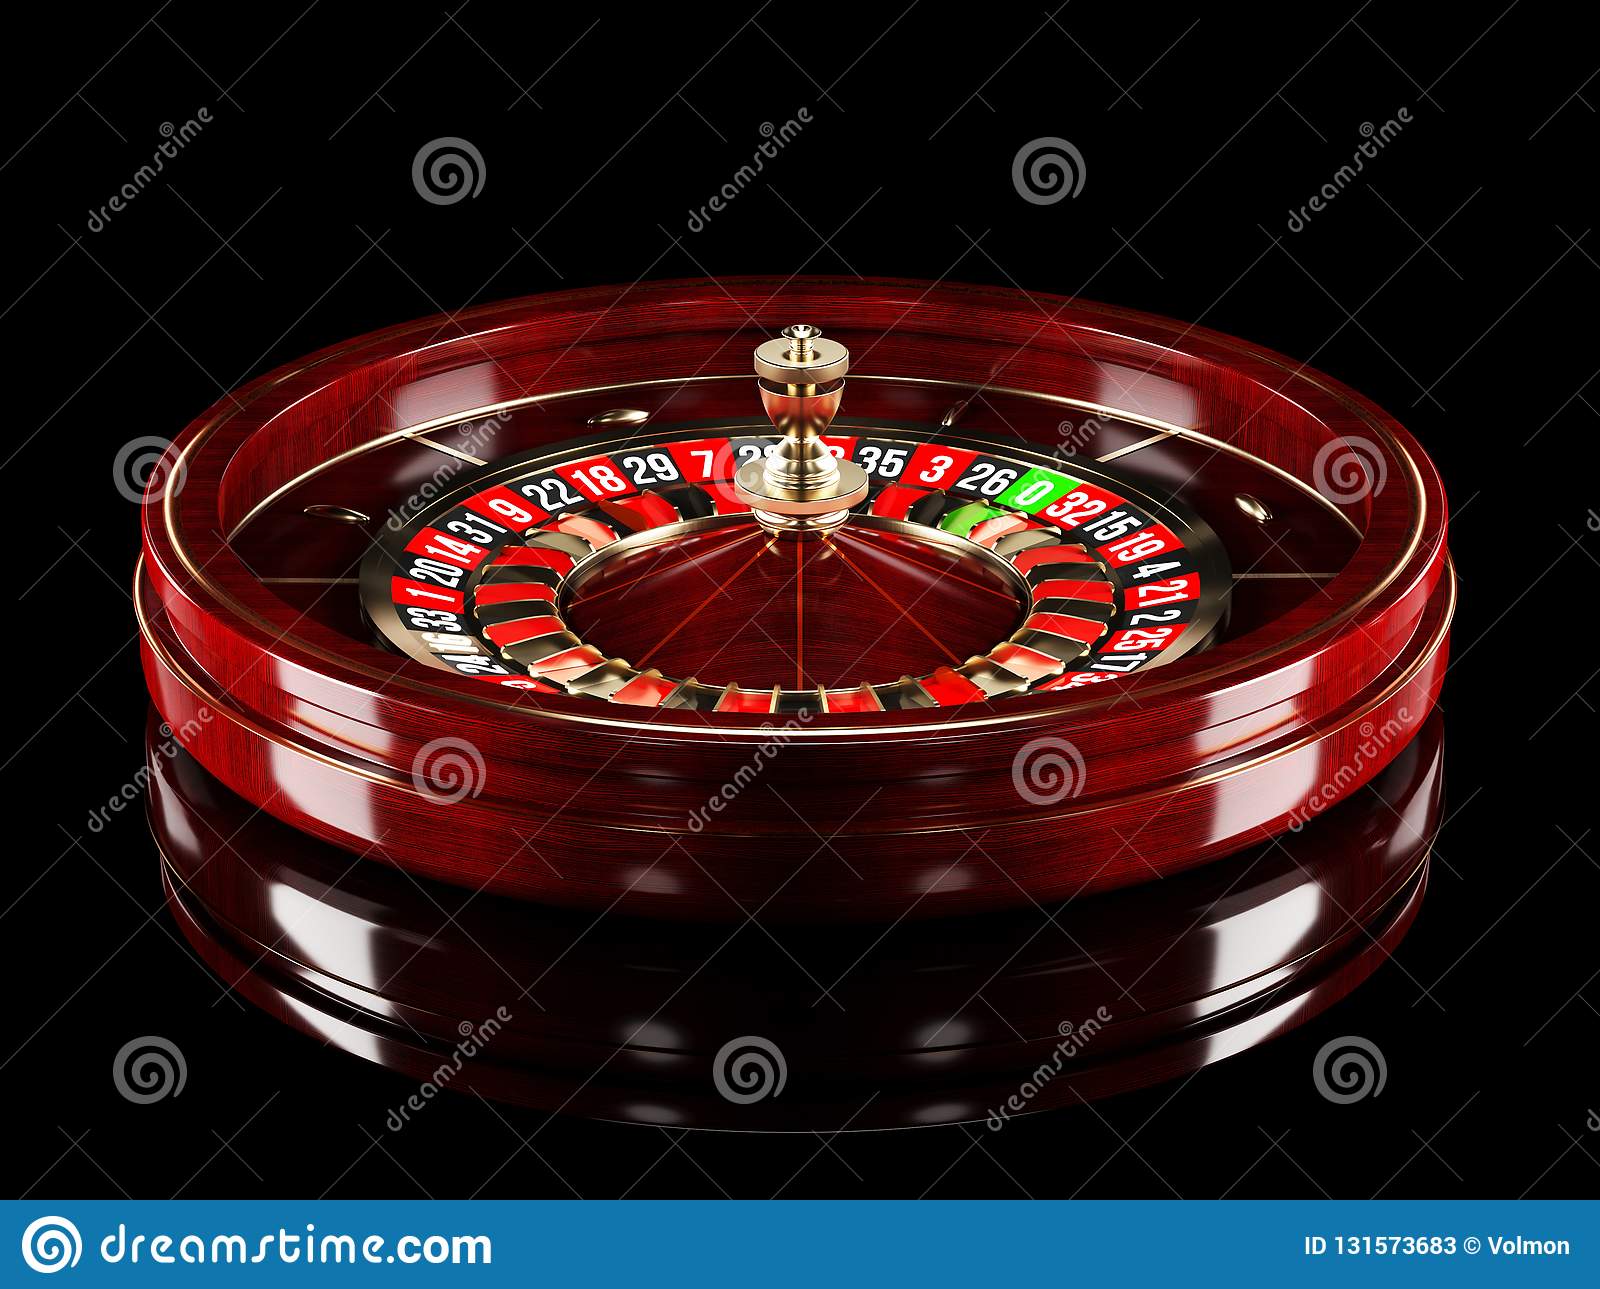 Bitcoin casino zurich